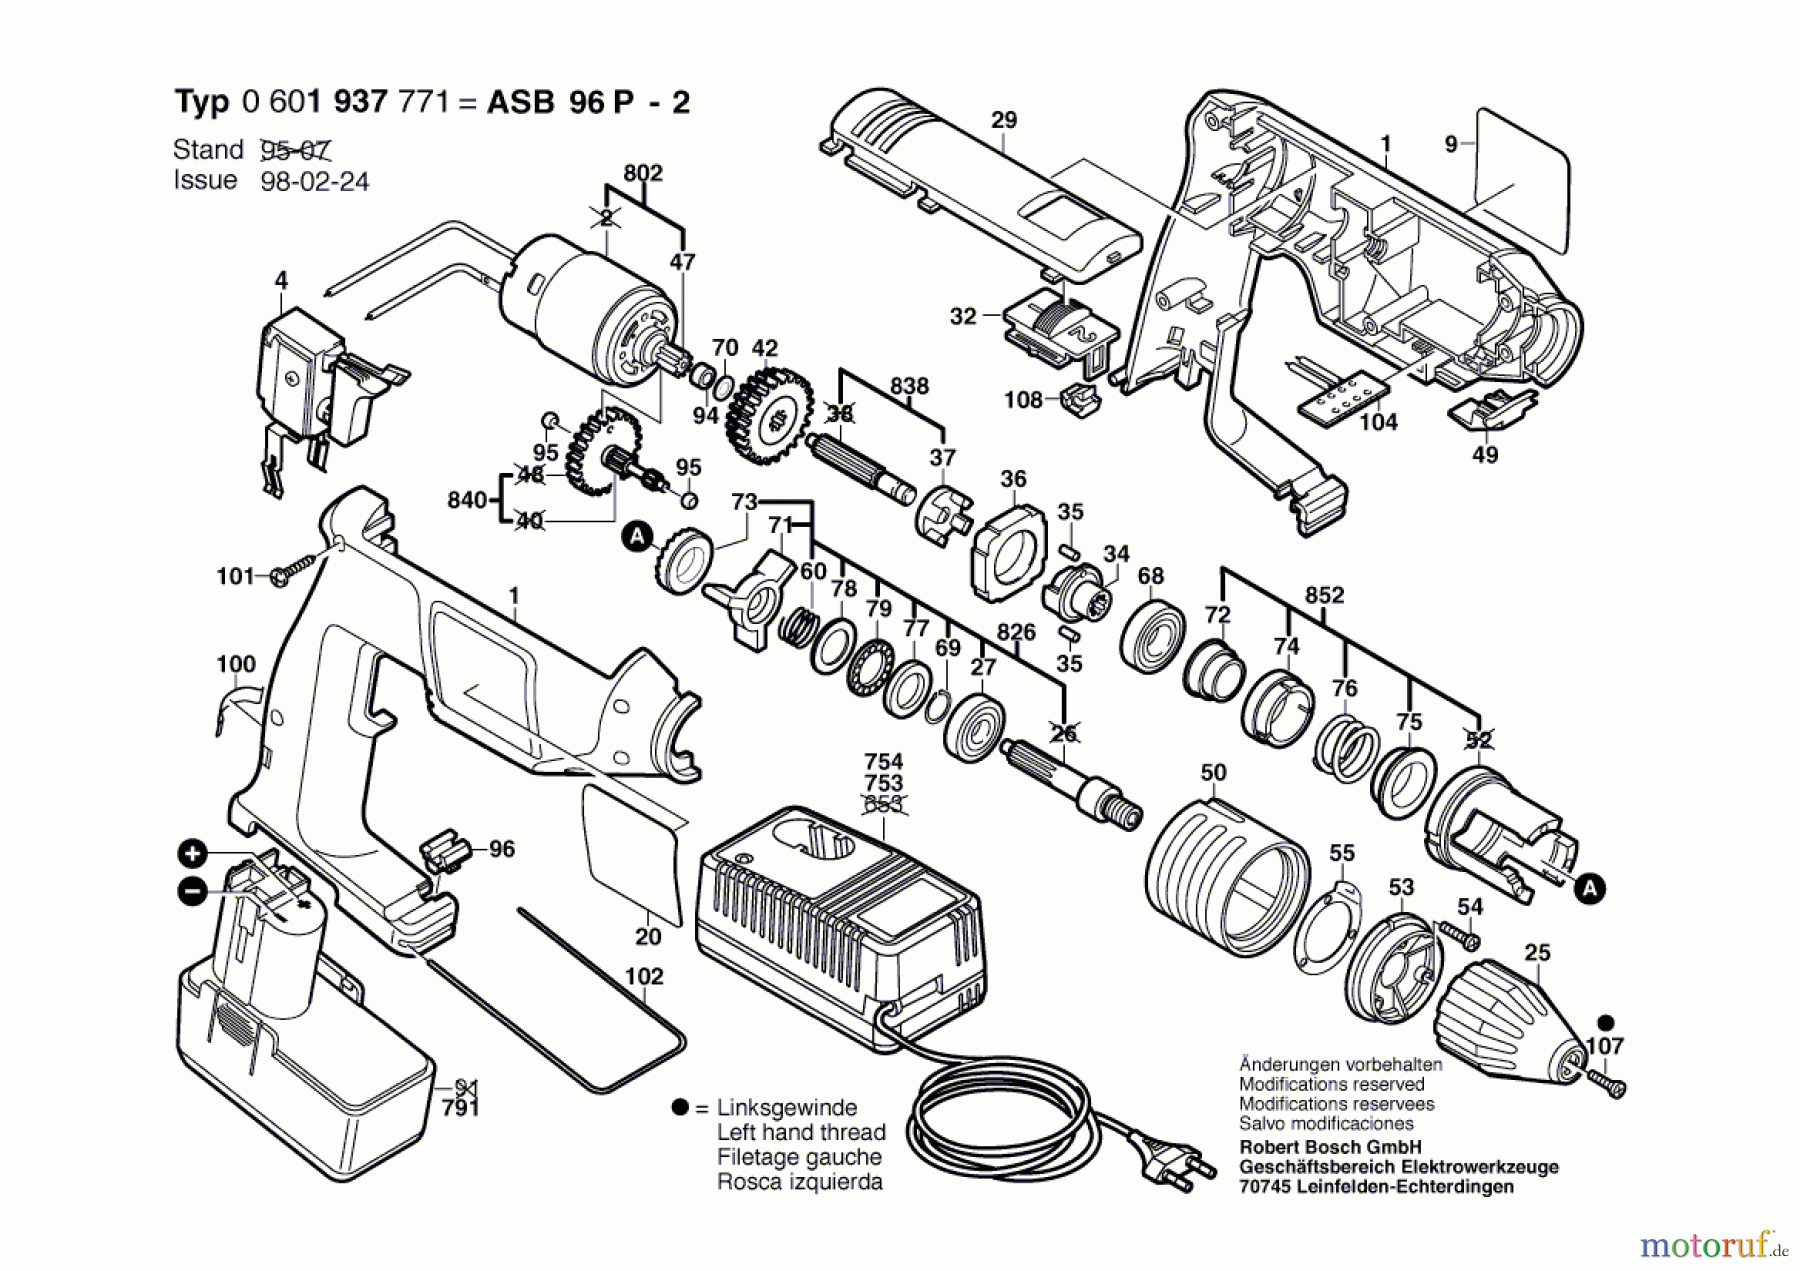  Bosch Akku Werkzeug Akku-Schlagbohrmaschine ASB 96 P-2 Seite 1